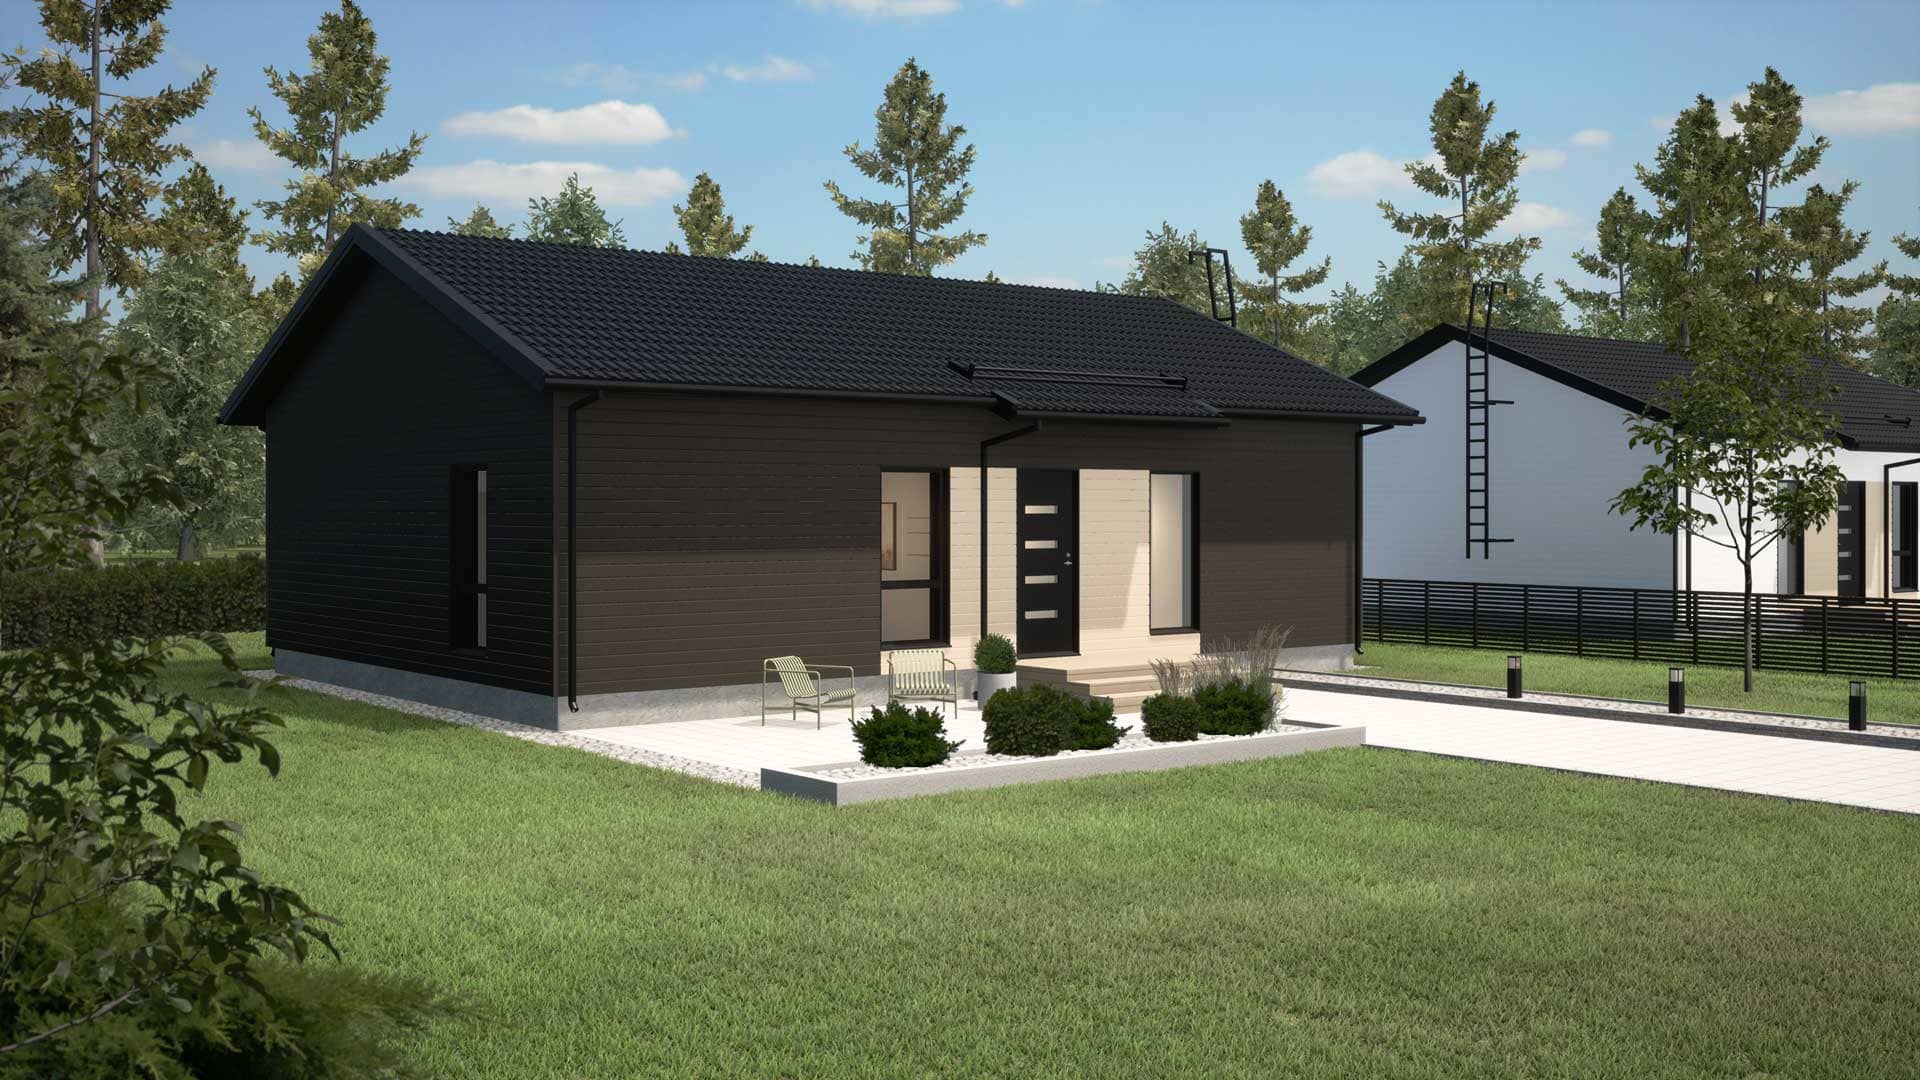 Visualisointikuva Arki 111A talomallista. Tummanruskea puutalo vaakalaudoituksella ja mustalla katolla. Kivetys ja nurmikkoa etualalla.